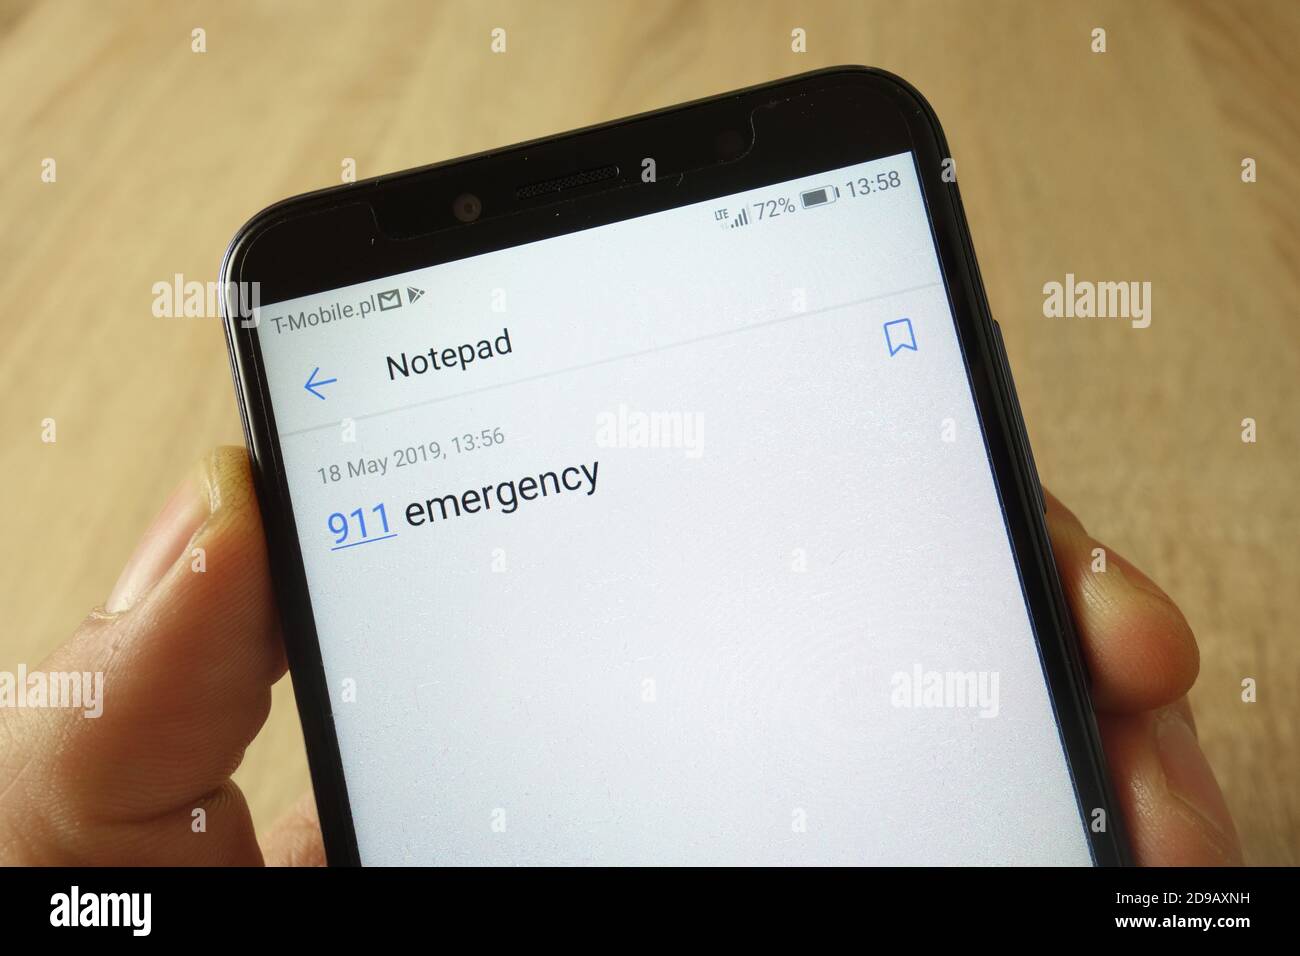 KONSKIE, POLONIA - 18 maggio 2019: Smartphone portatile con nota di emergenza 911 sull'applicazione blocco note visualizzata sullo schermo Foto Stock